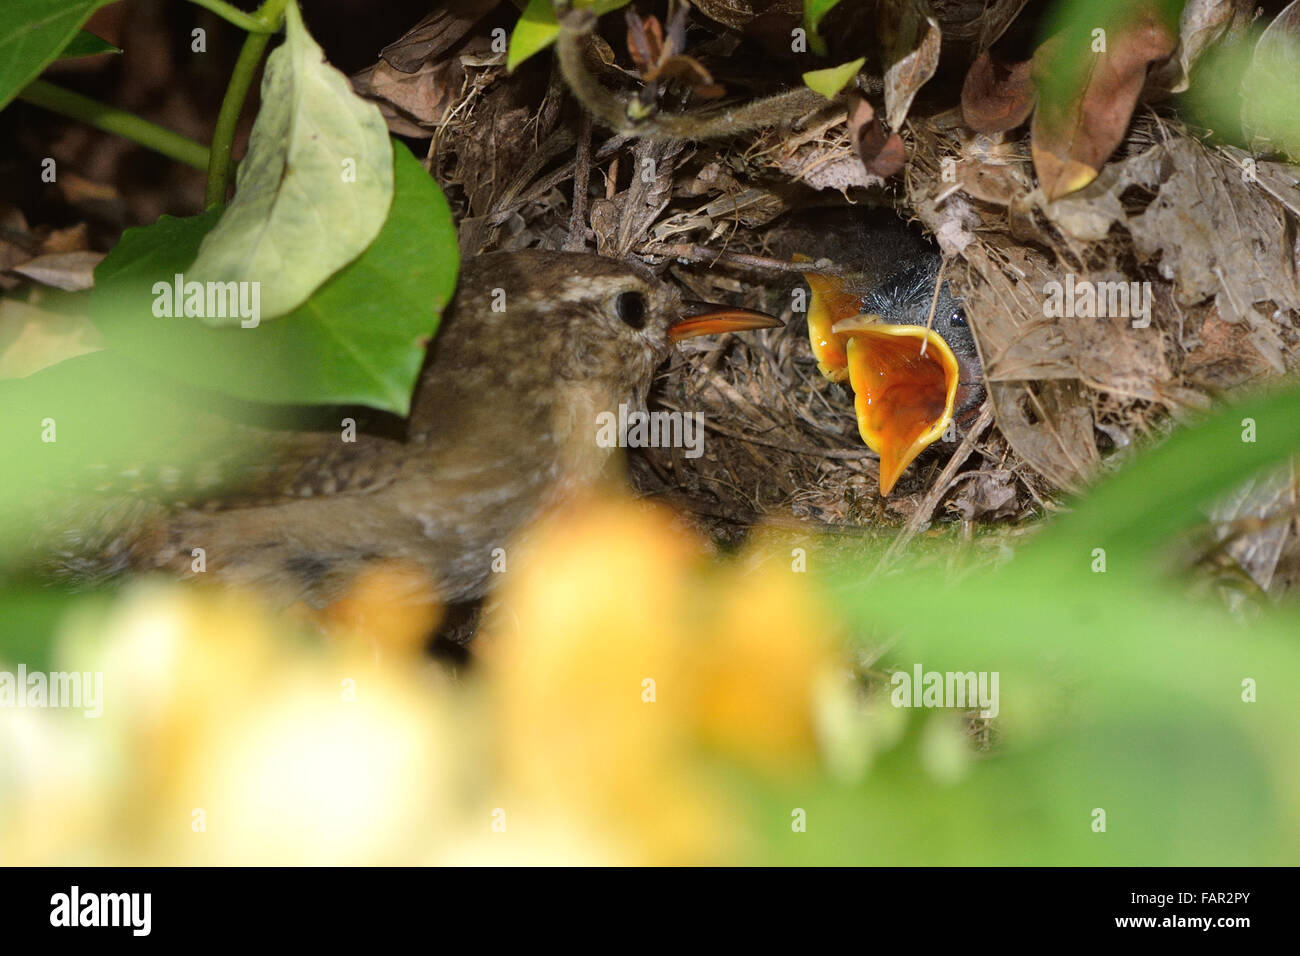 Alimentation Wren bouches affamées. Un parent wren présente de la nourriture aux oisillons affamés dans le nid Banque D'Images